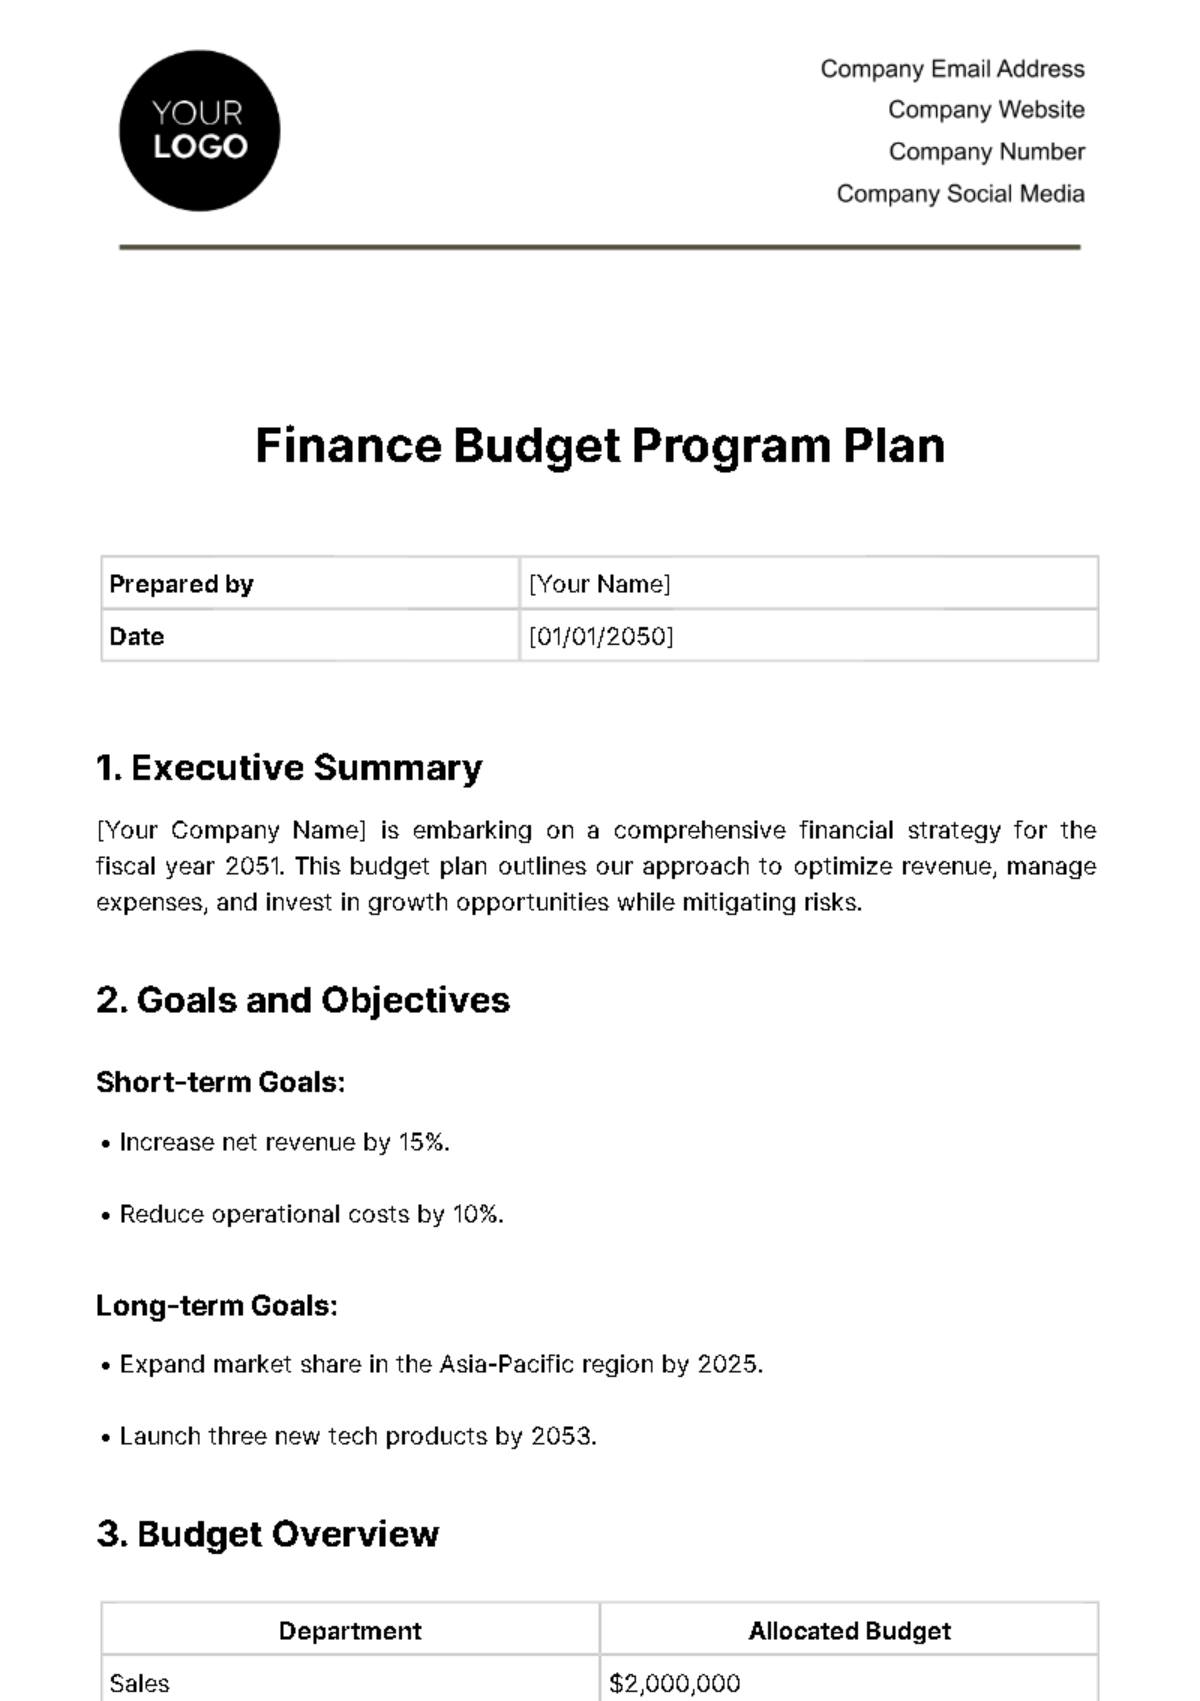 Finance Budget Program Plan Template